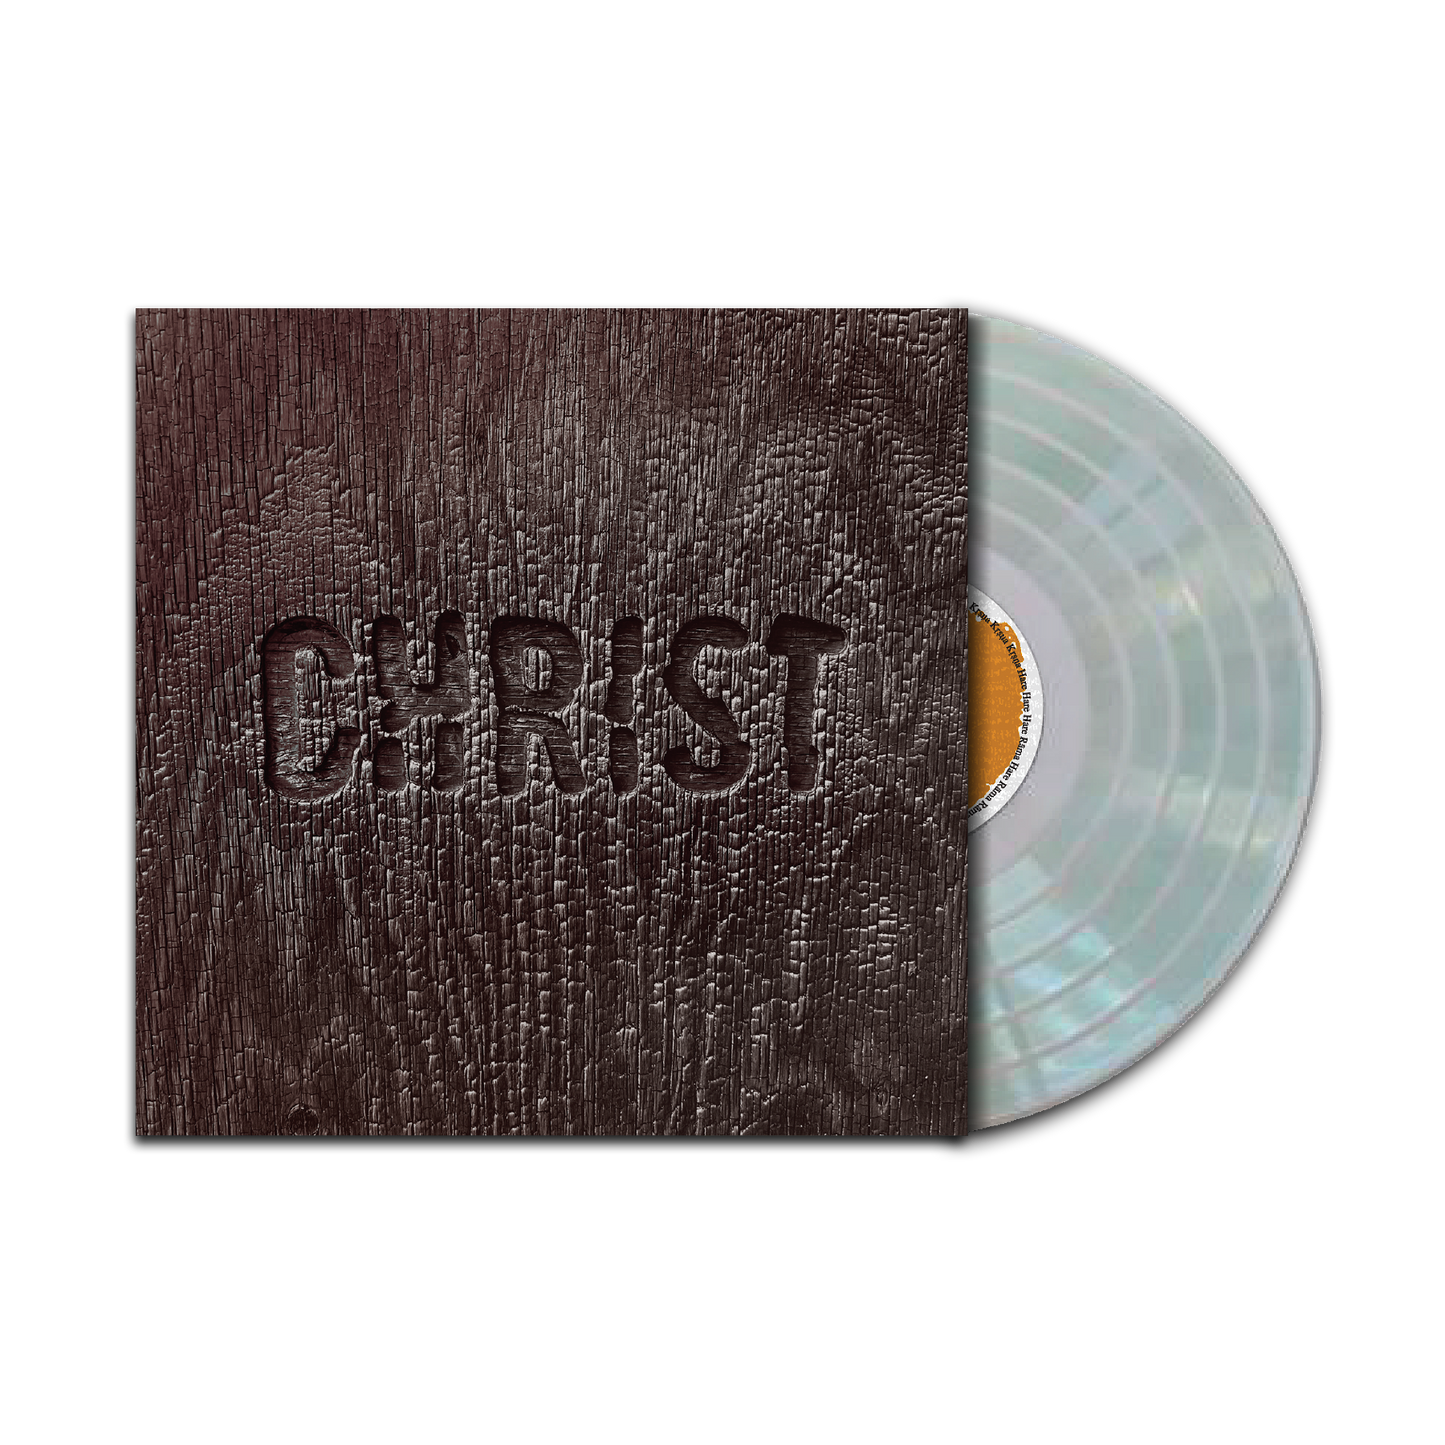 Christ - Complete - 2XLP